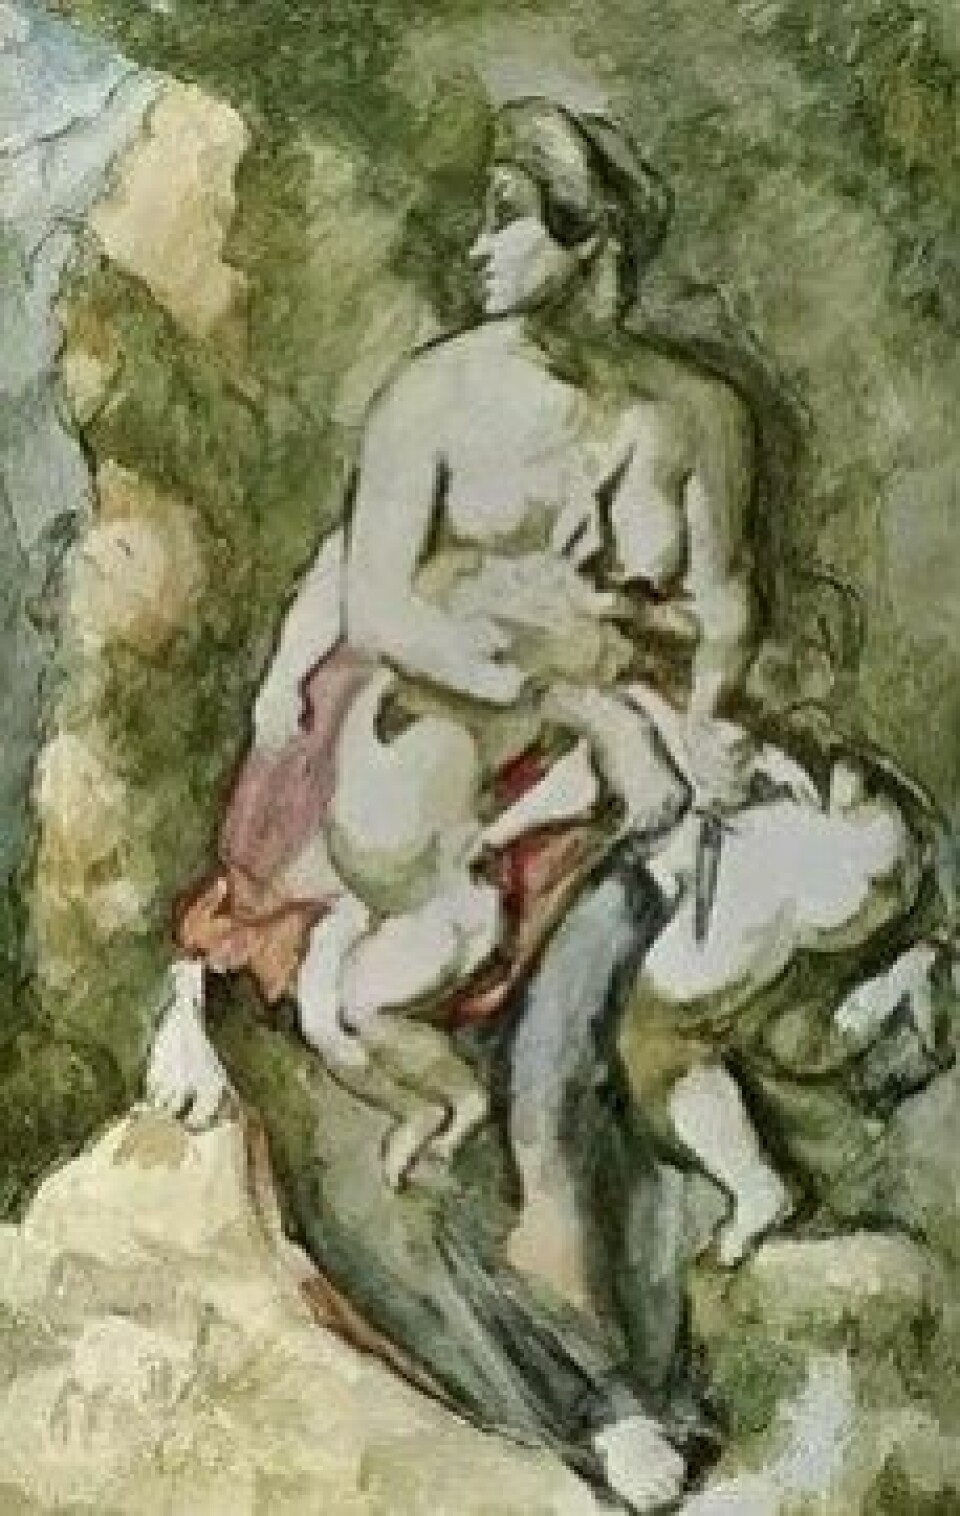 Det er vreden som blir det styrende elementet i Medeias beslutning, og det helt avgjørende er hva som vil påføre Jason størst smerte. Her malt av Paul Cézanne. (Kilde: Wikimedia Commons)